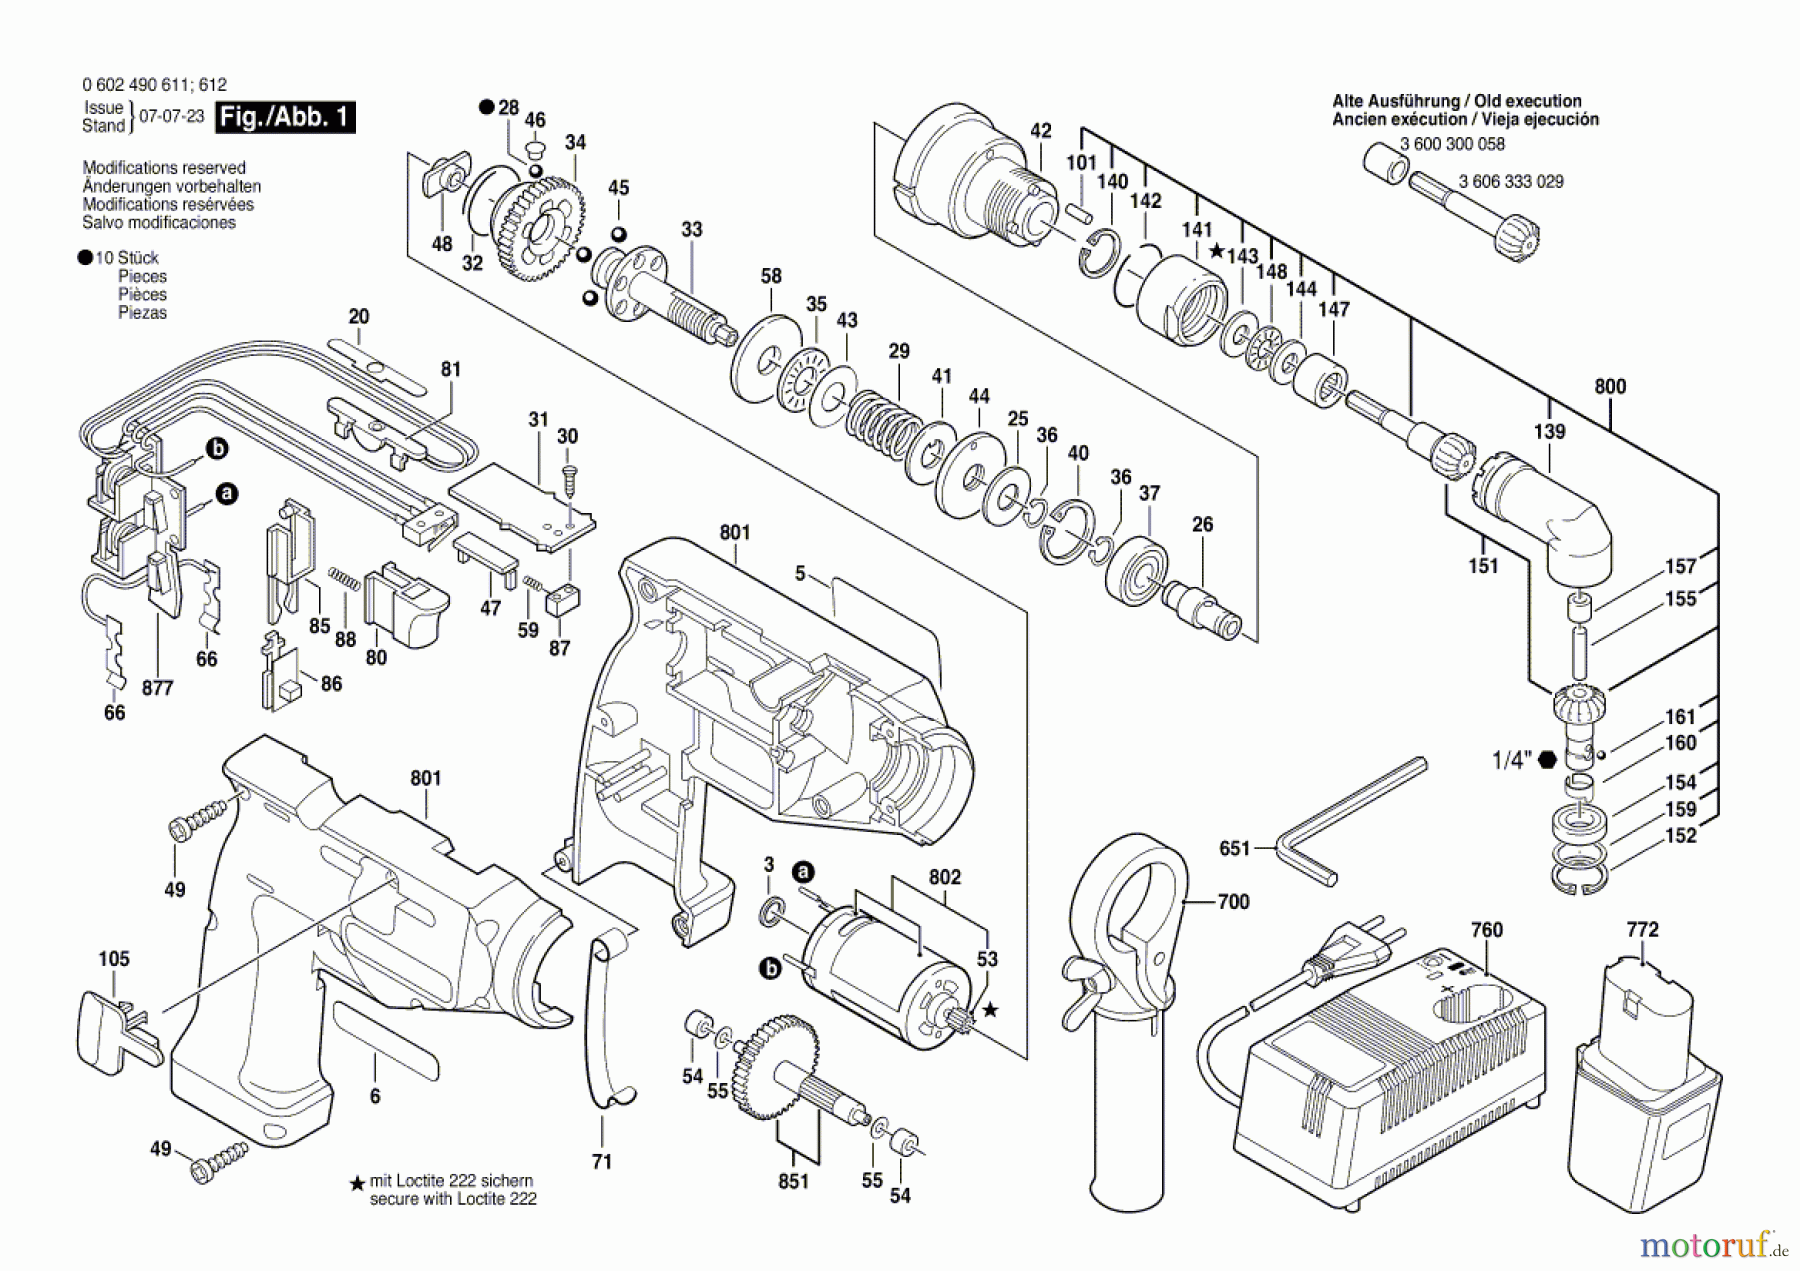  Bosch Akku Werkzeug Iw-Akku-Schrauber IASR 9,6-12V Seite 1